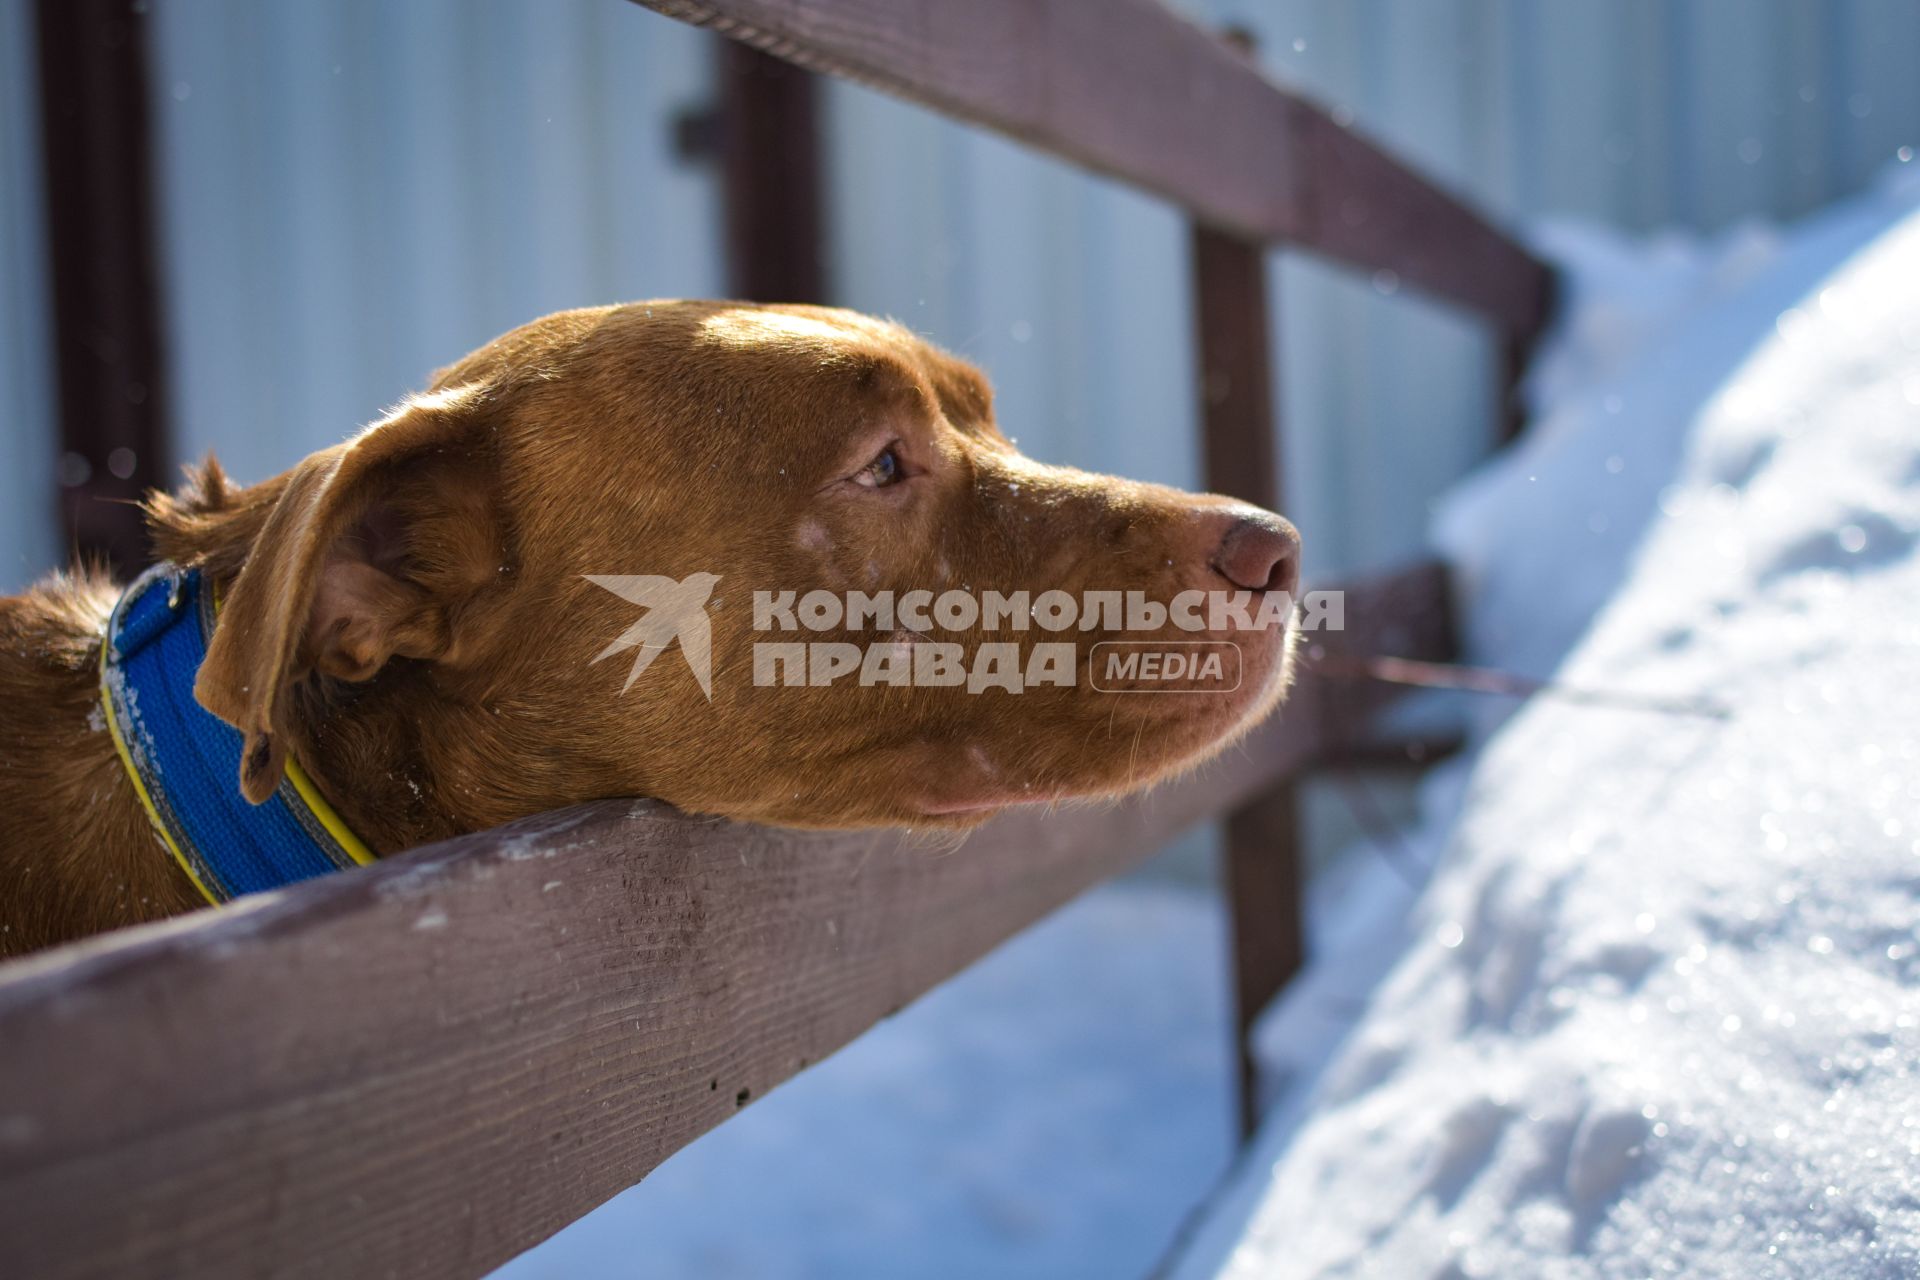 Новосибирск. Собака Хати, брошенная хозяином в аэропорту Анапы, переехала в новосибирский питомник и ожидает нового хозяина.